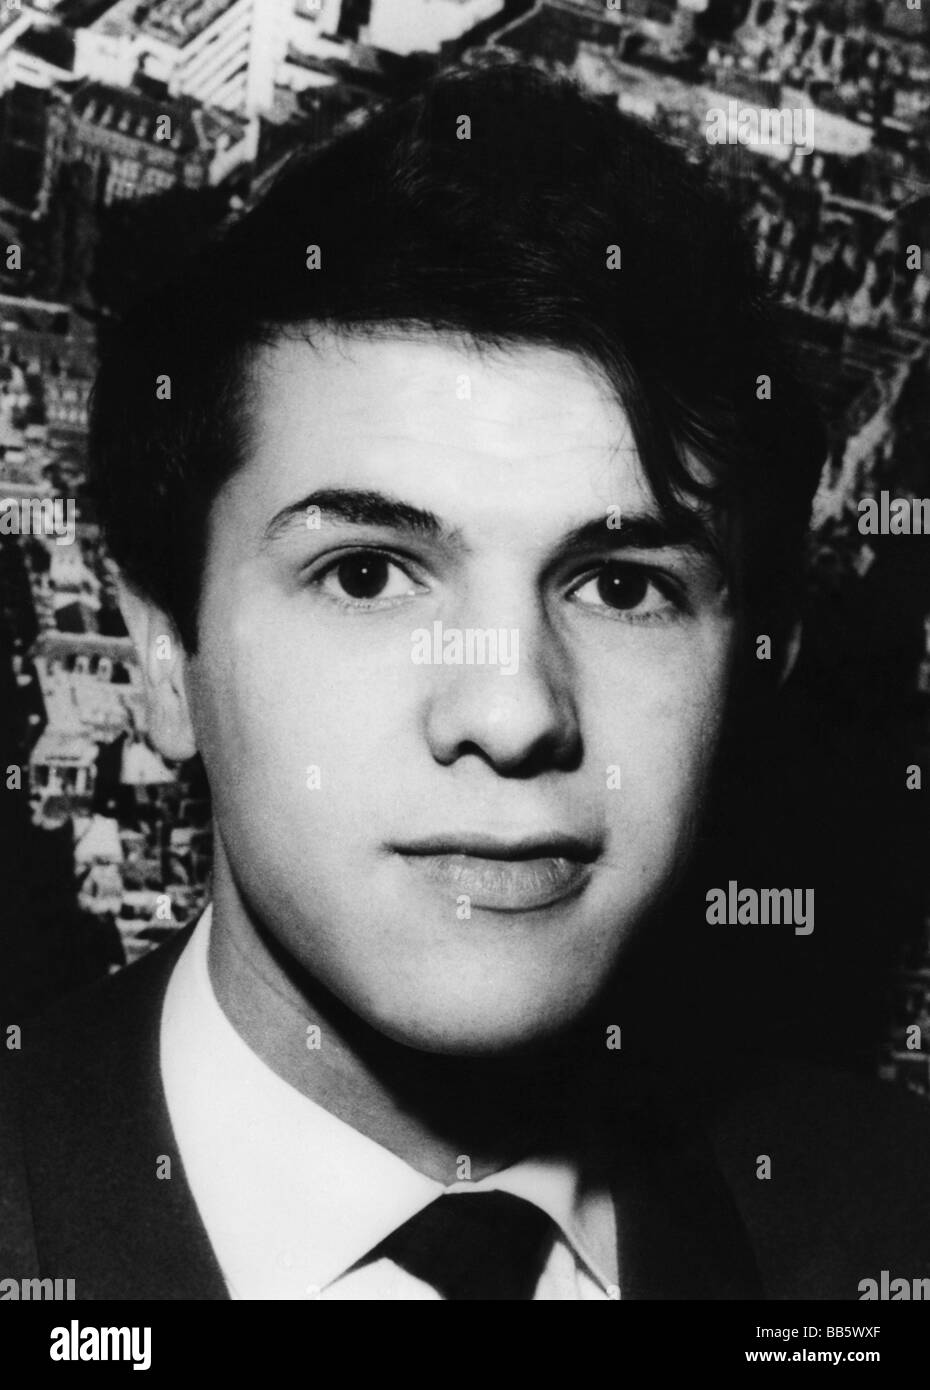 Adamo, Salvatore * 1.11.1943, cantante belga, ritratto, primi 1960s, Foto Stock